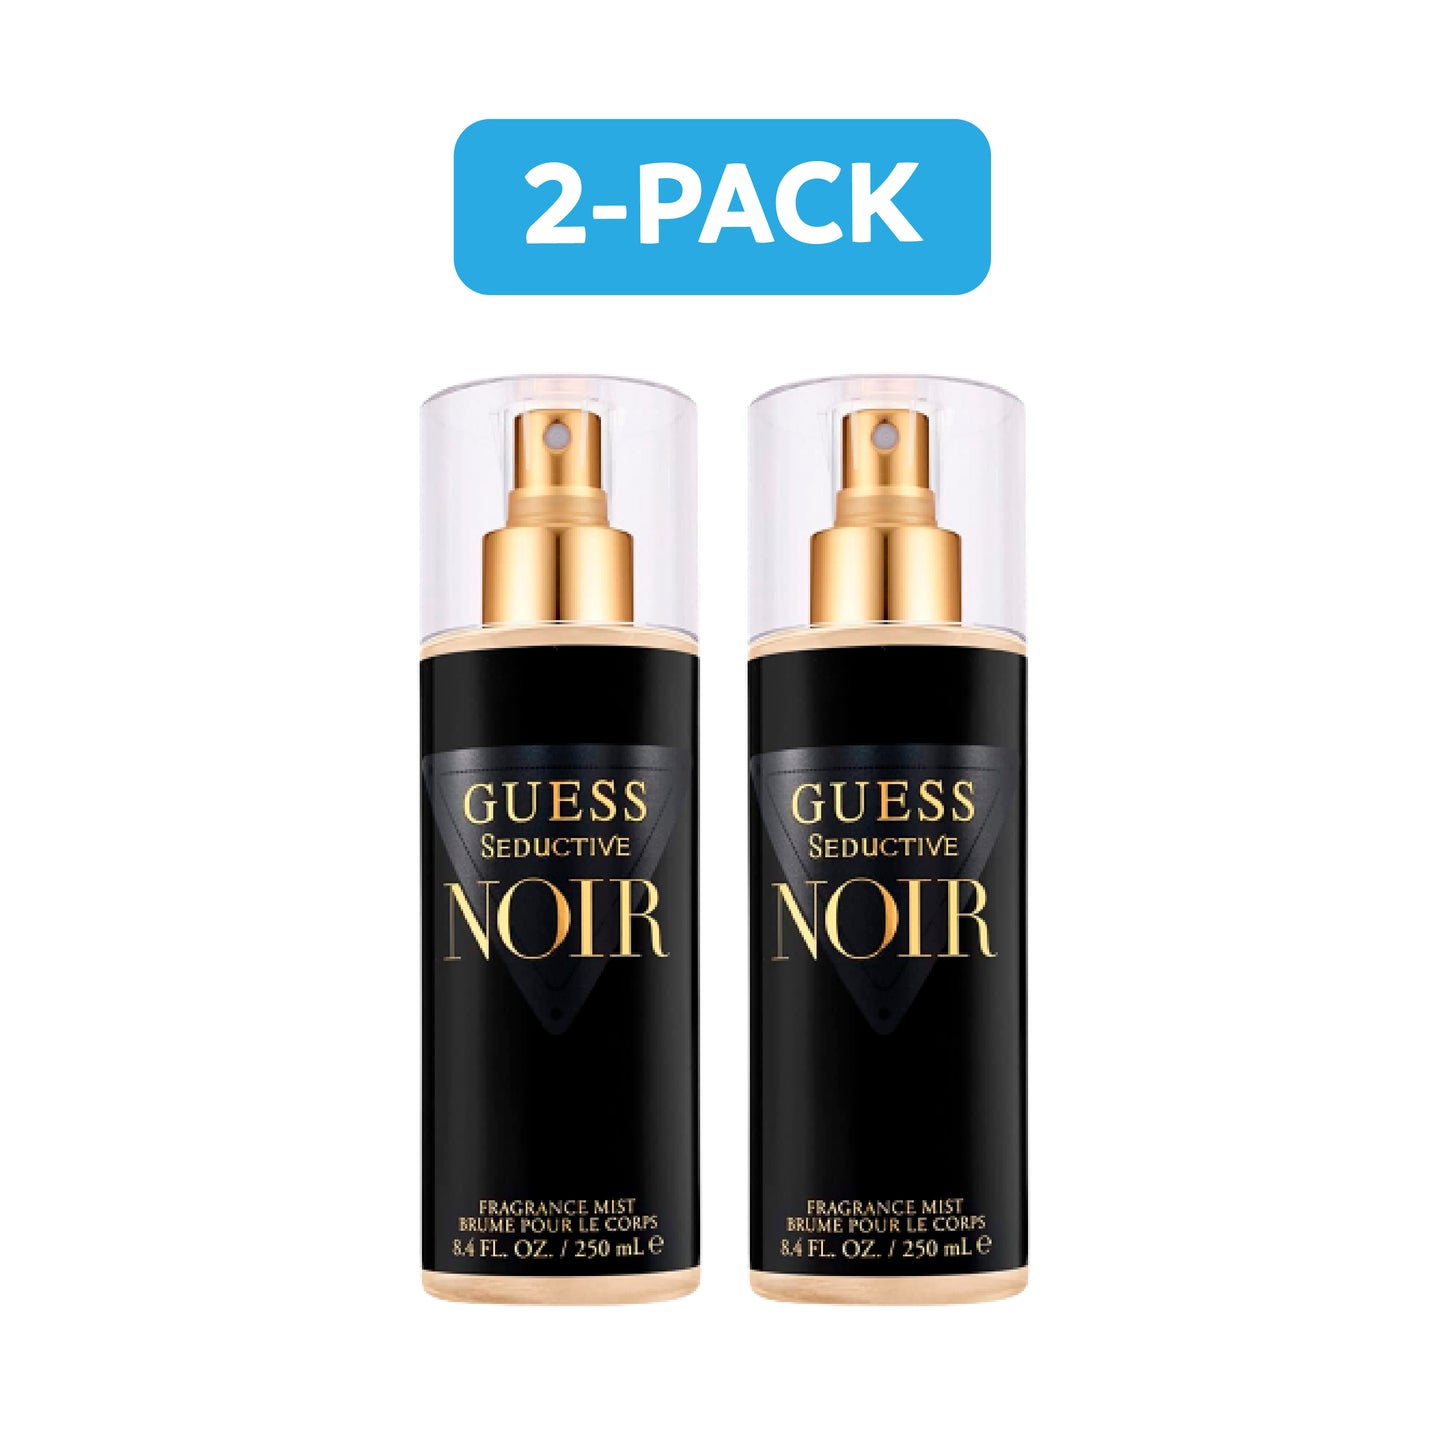 Guess Seductive Noir Fragrance Mist for Women 8.4 oz 250 ml (2 Pack)